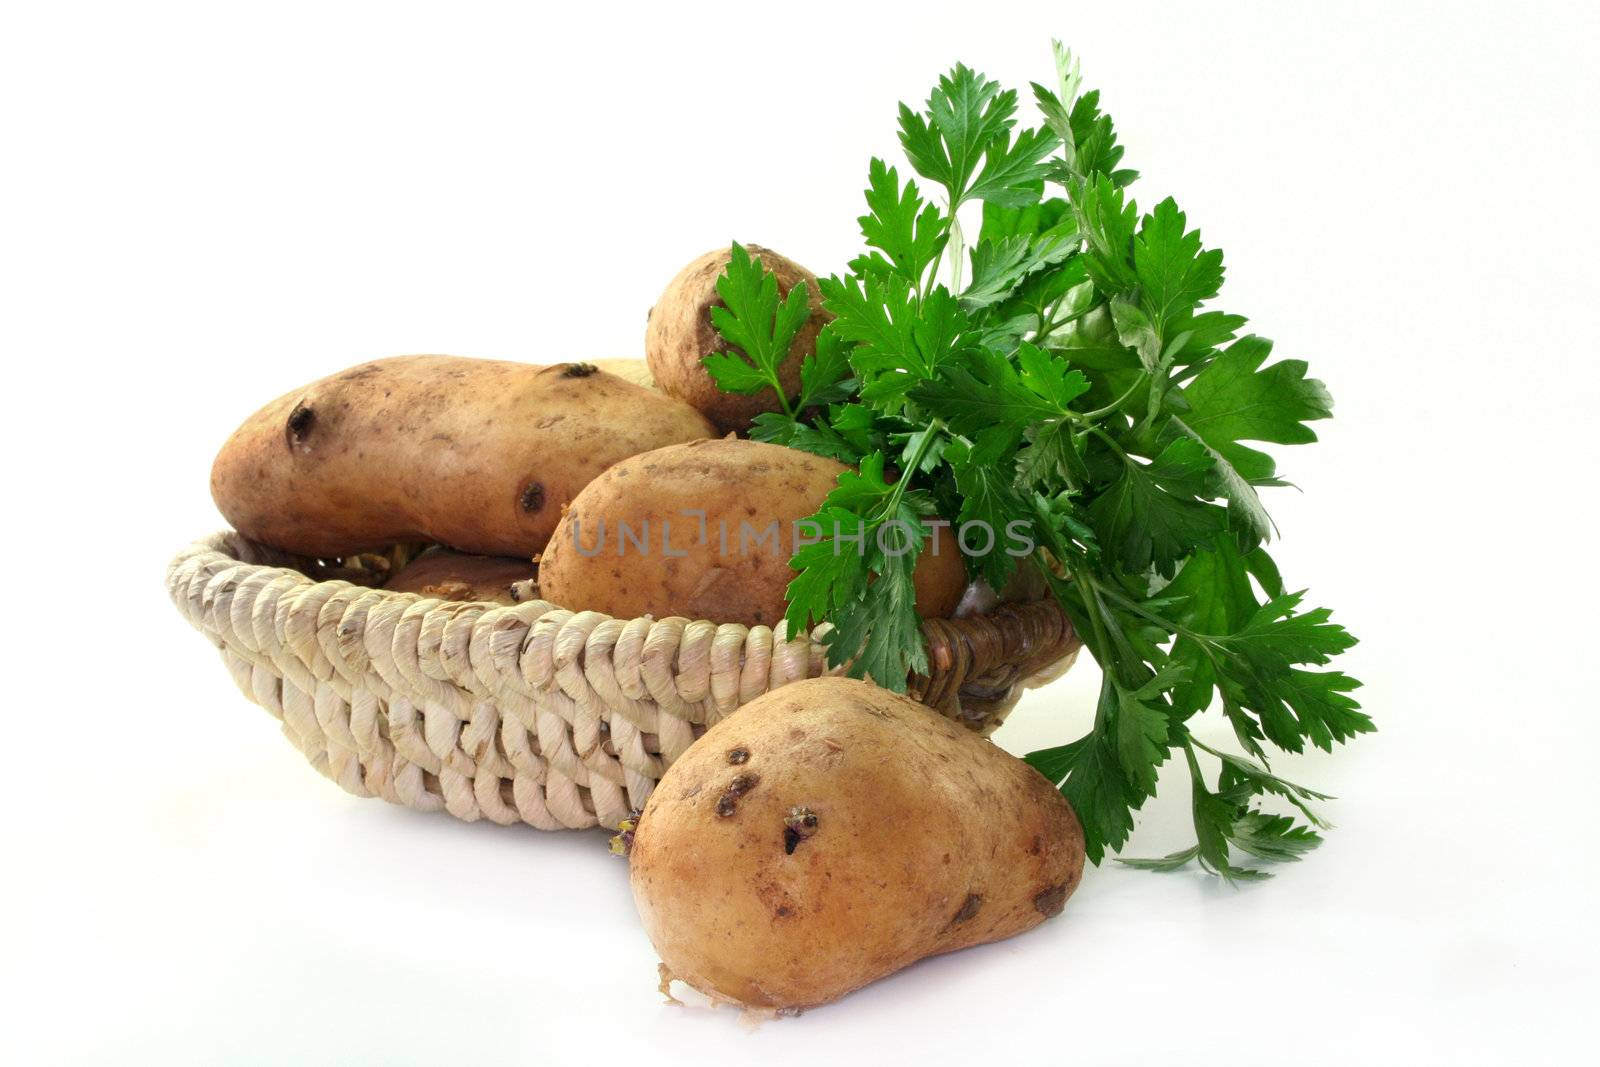 Potatoes by silencefoto